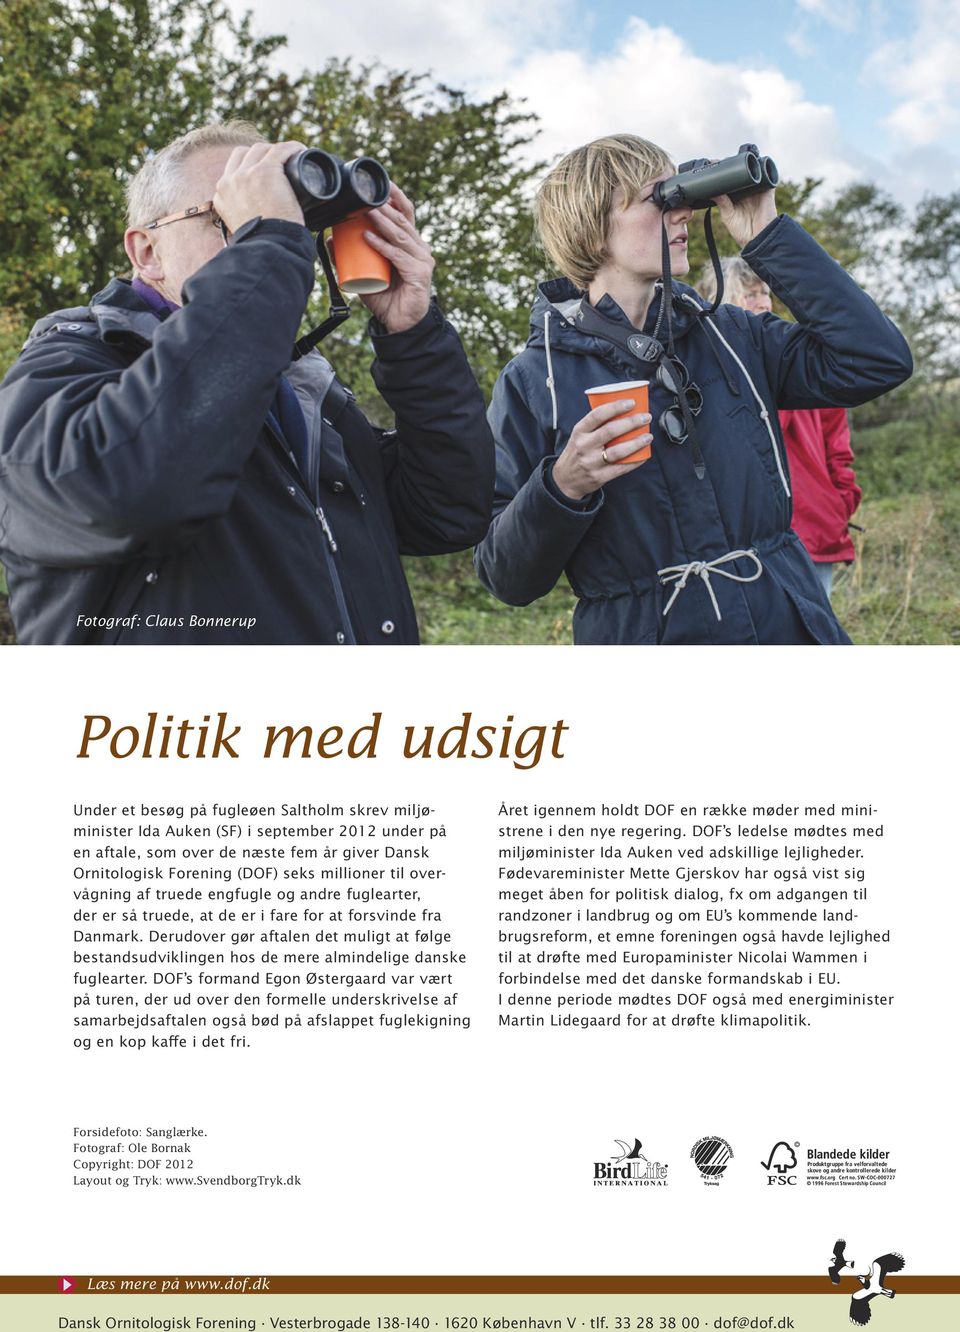 Derudover gør aftalen det muligt at følge bestands udviklingen hos de mere almindelige danske fuglearter.